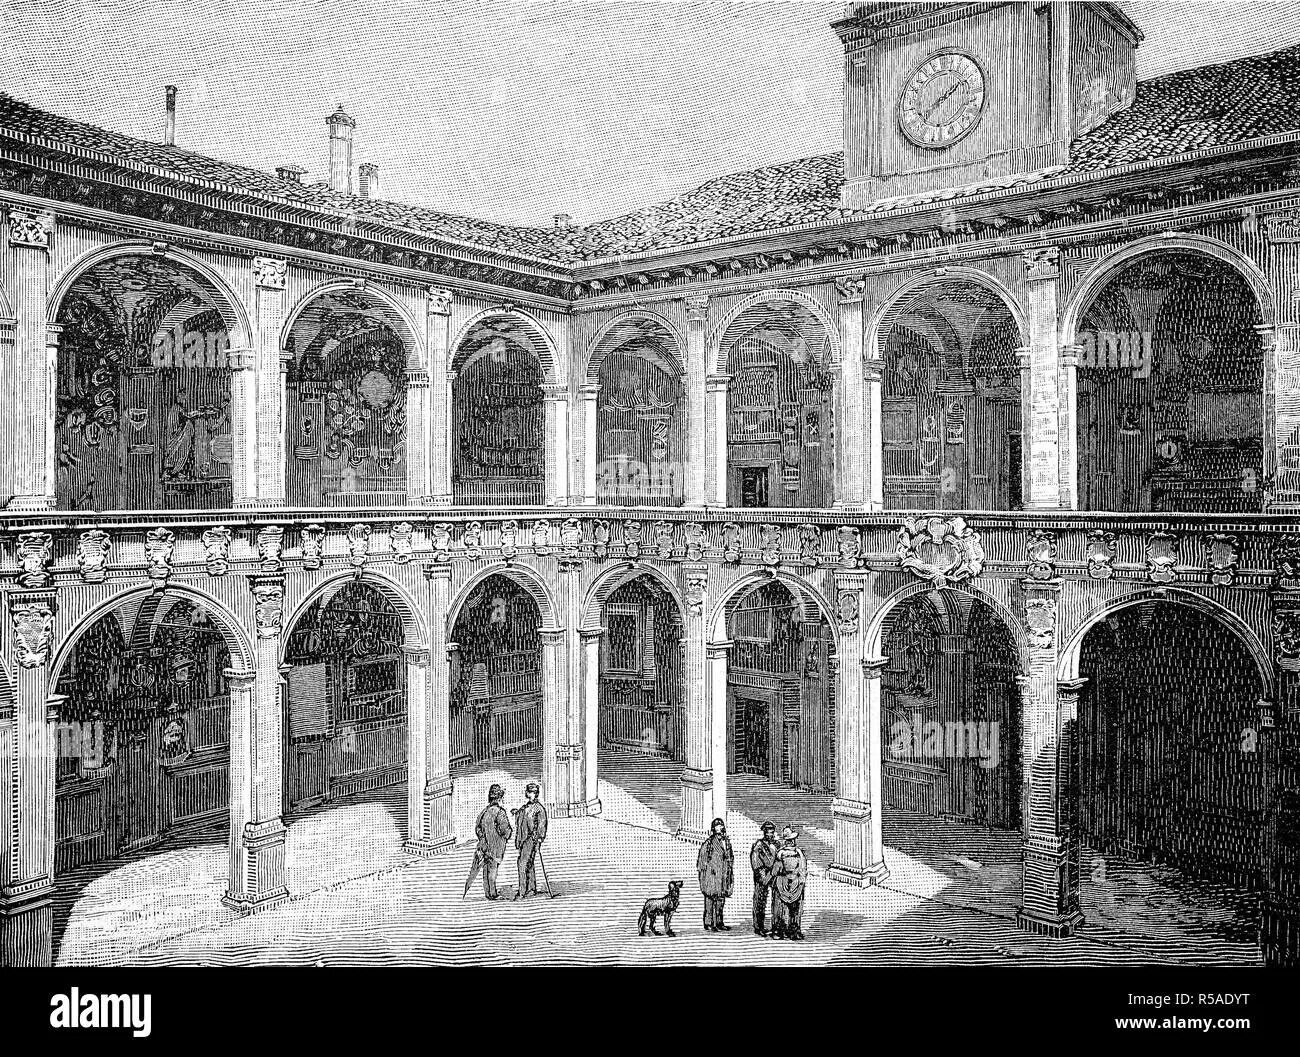 Самые первые университеты появились в. Болонский университет Италия 1088. Первый университет в Болонье 1158. Университет Болоньи в средневековье. Болонский университет 15 век.